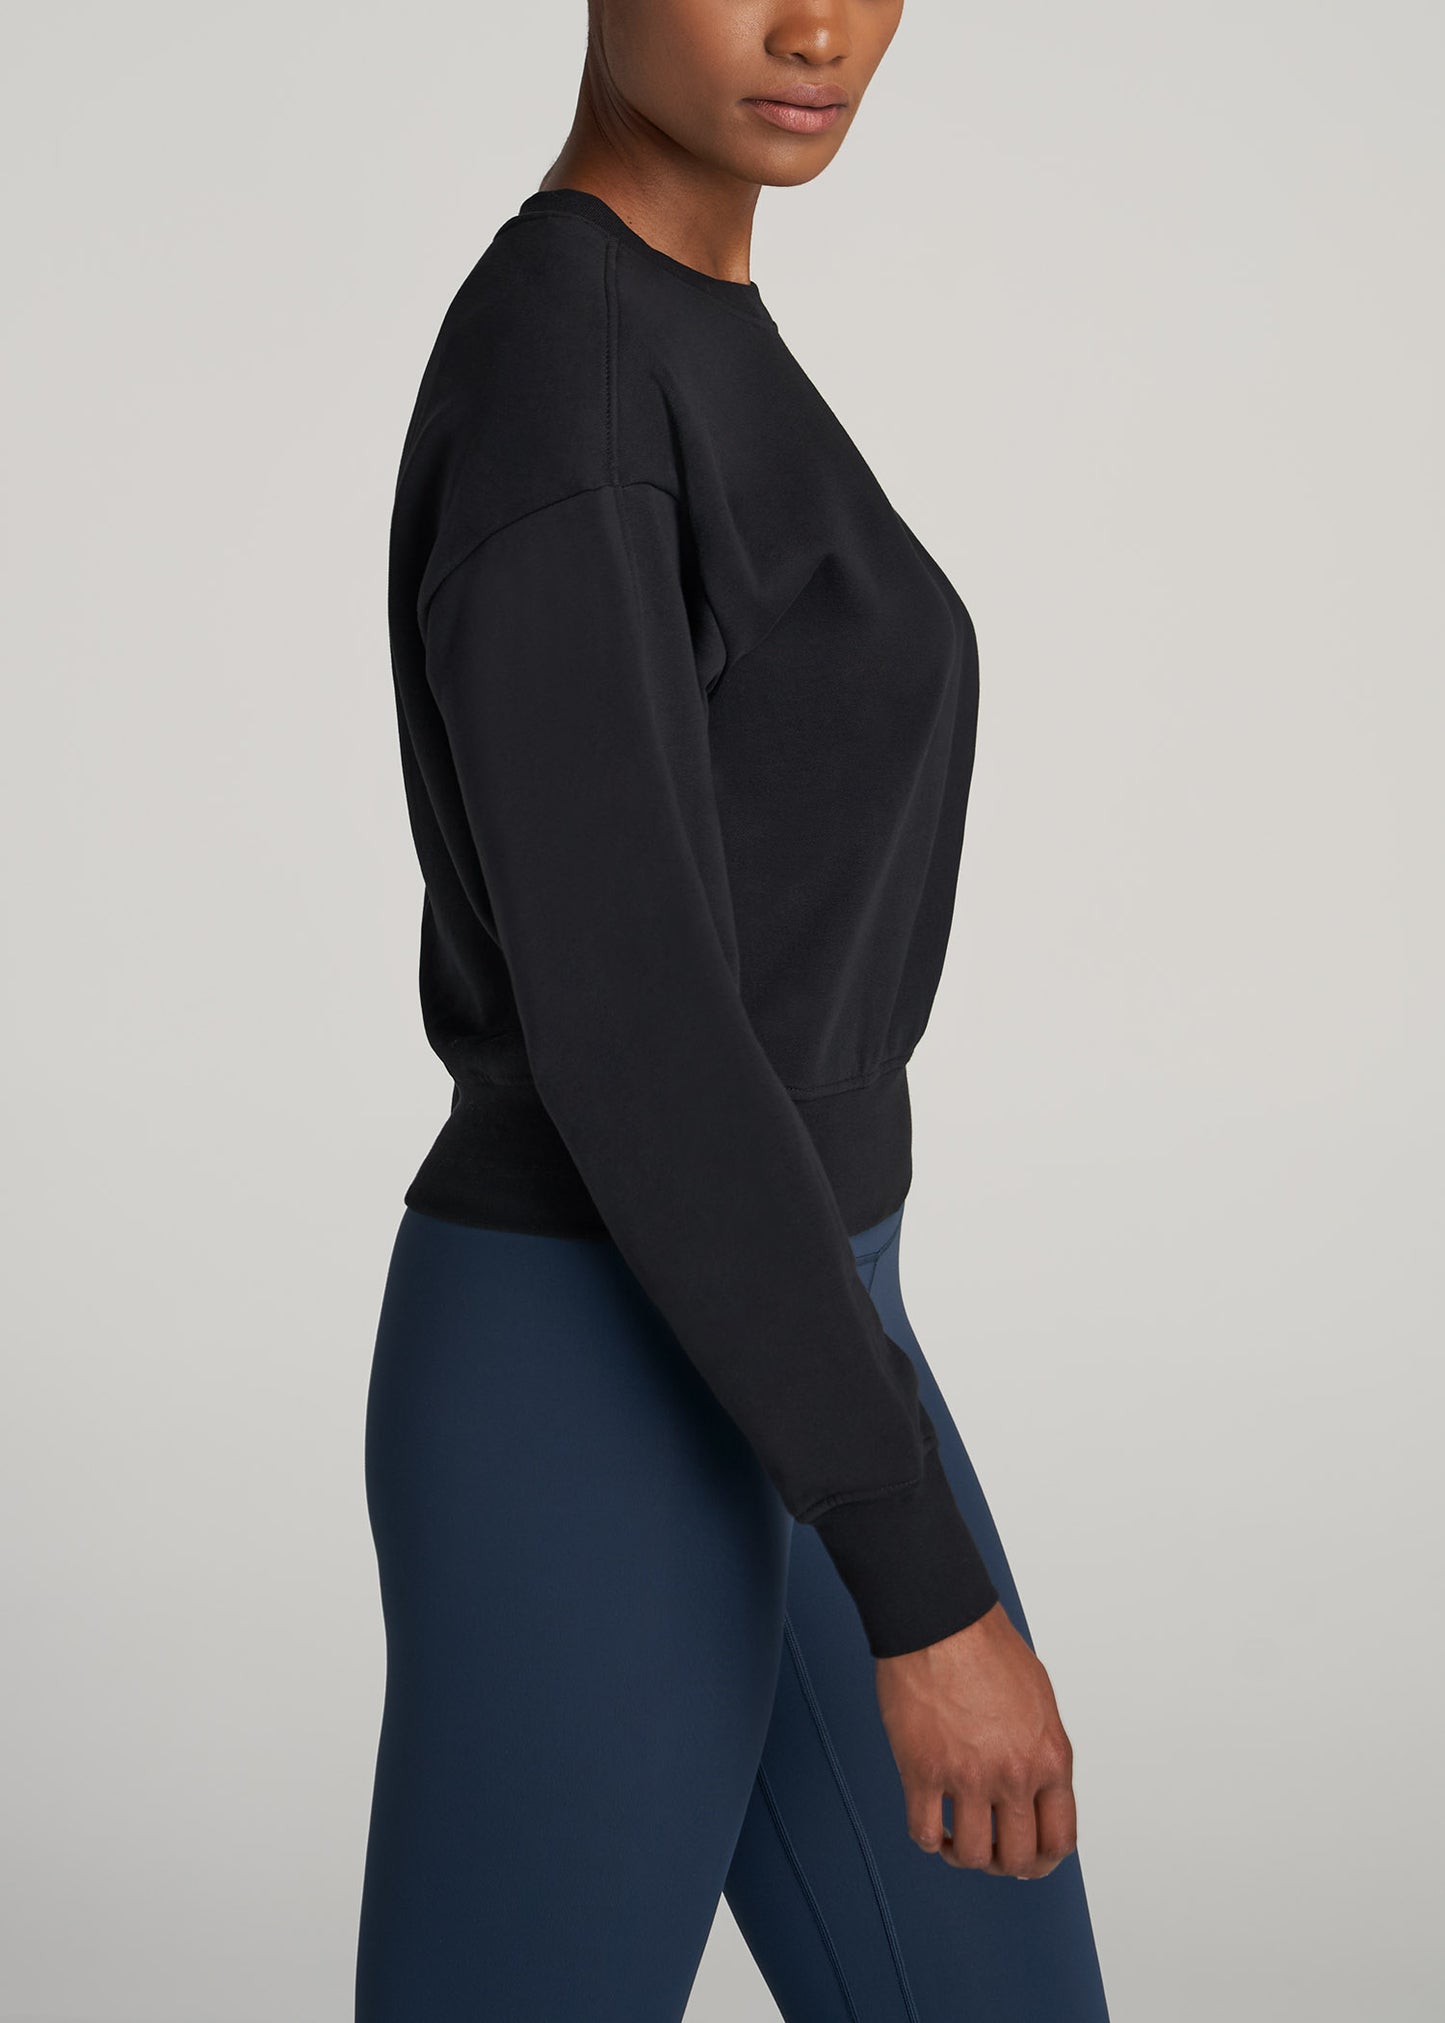    American-Tall-Women-WKND-Fleece-Cropped-Crew-Sweatshirt-Black-sidE